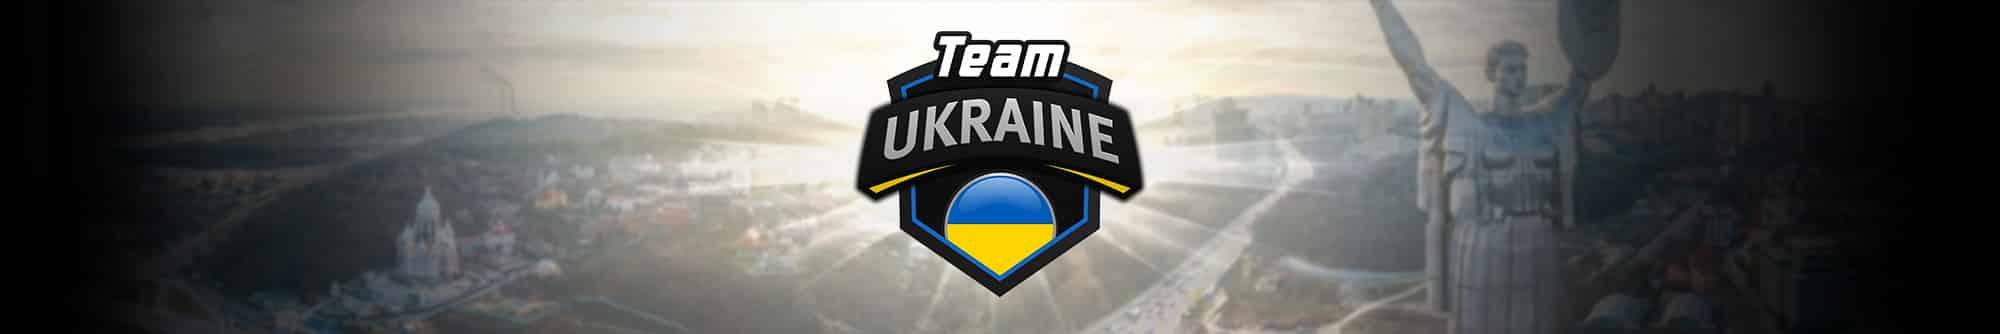 ggpoker online poker team ukraine